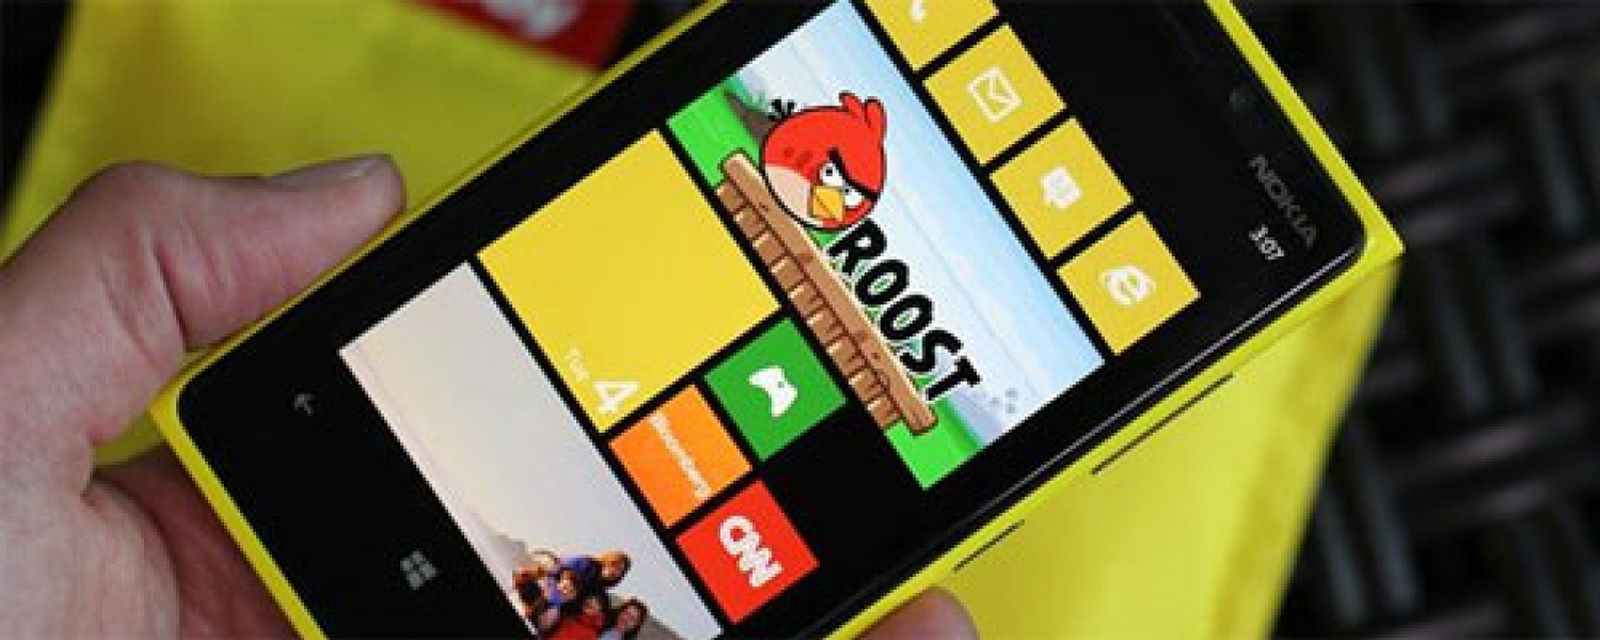 Foto: ¿Tiene el Lumia 920 lo necesario para competir contra iPhone  y Galaxy S?